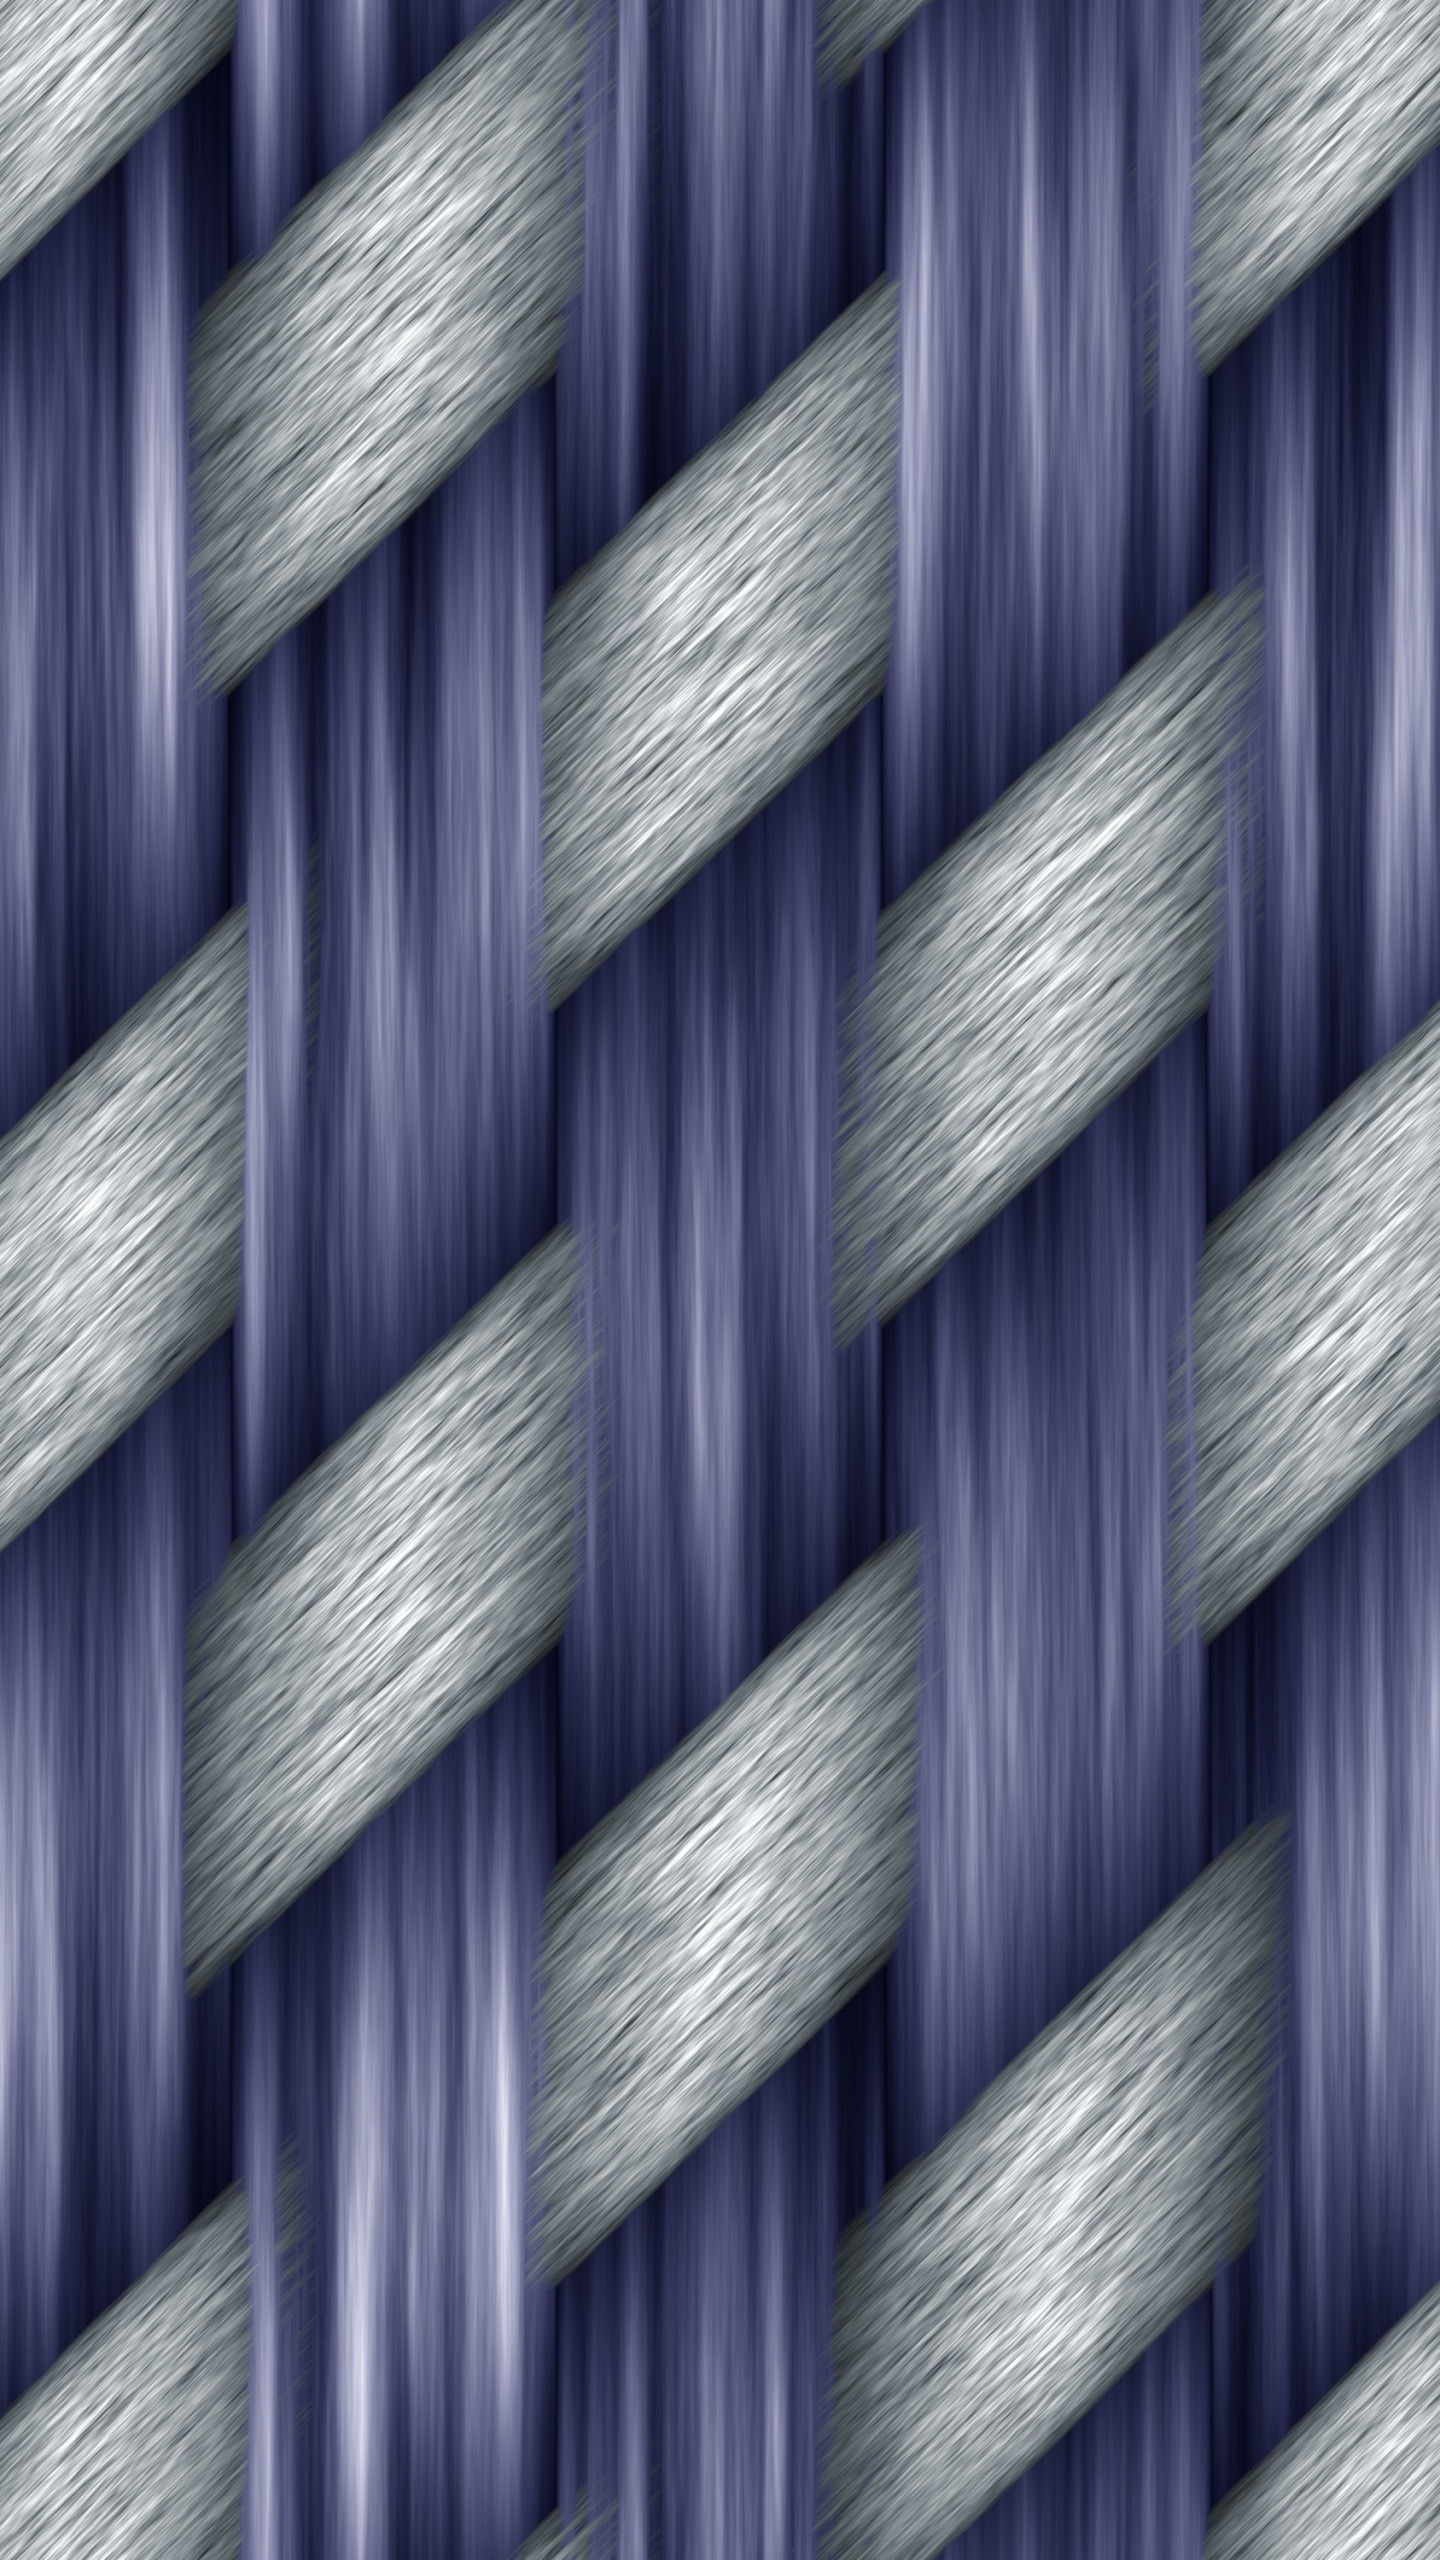 Panel de Vidrio Azul y Blanco. Wallpaper in 1440x2560 Resolution